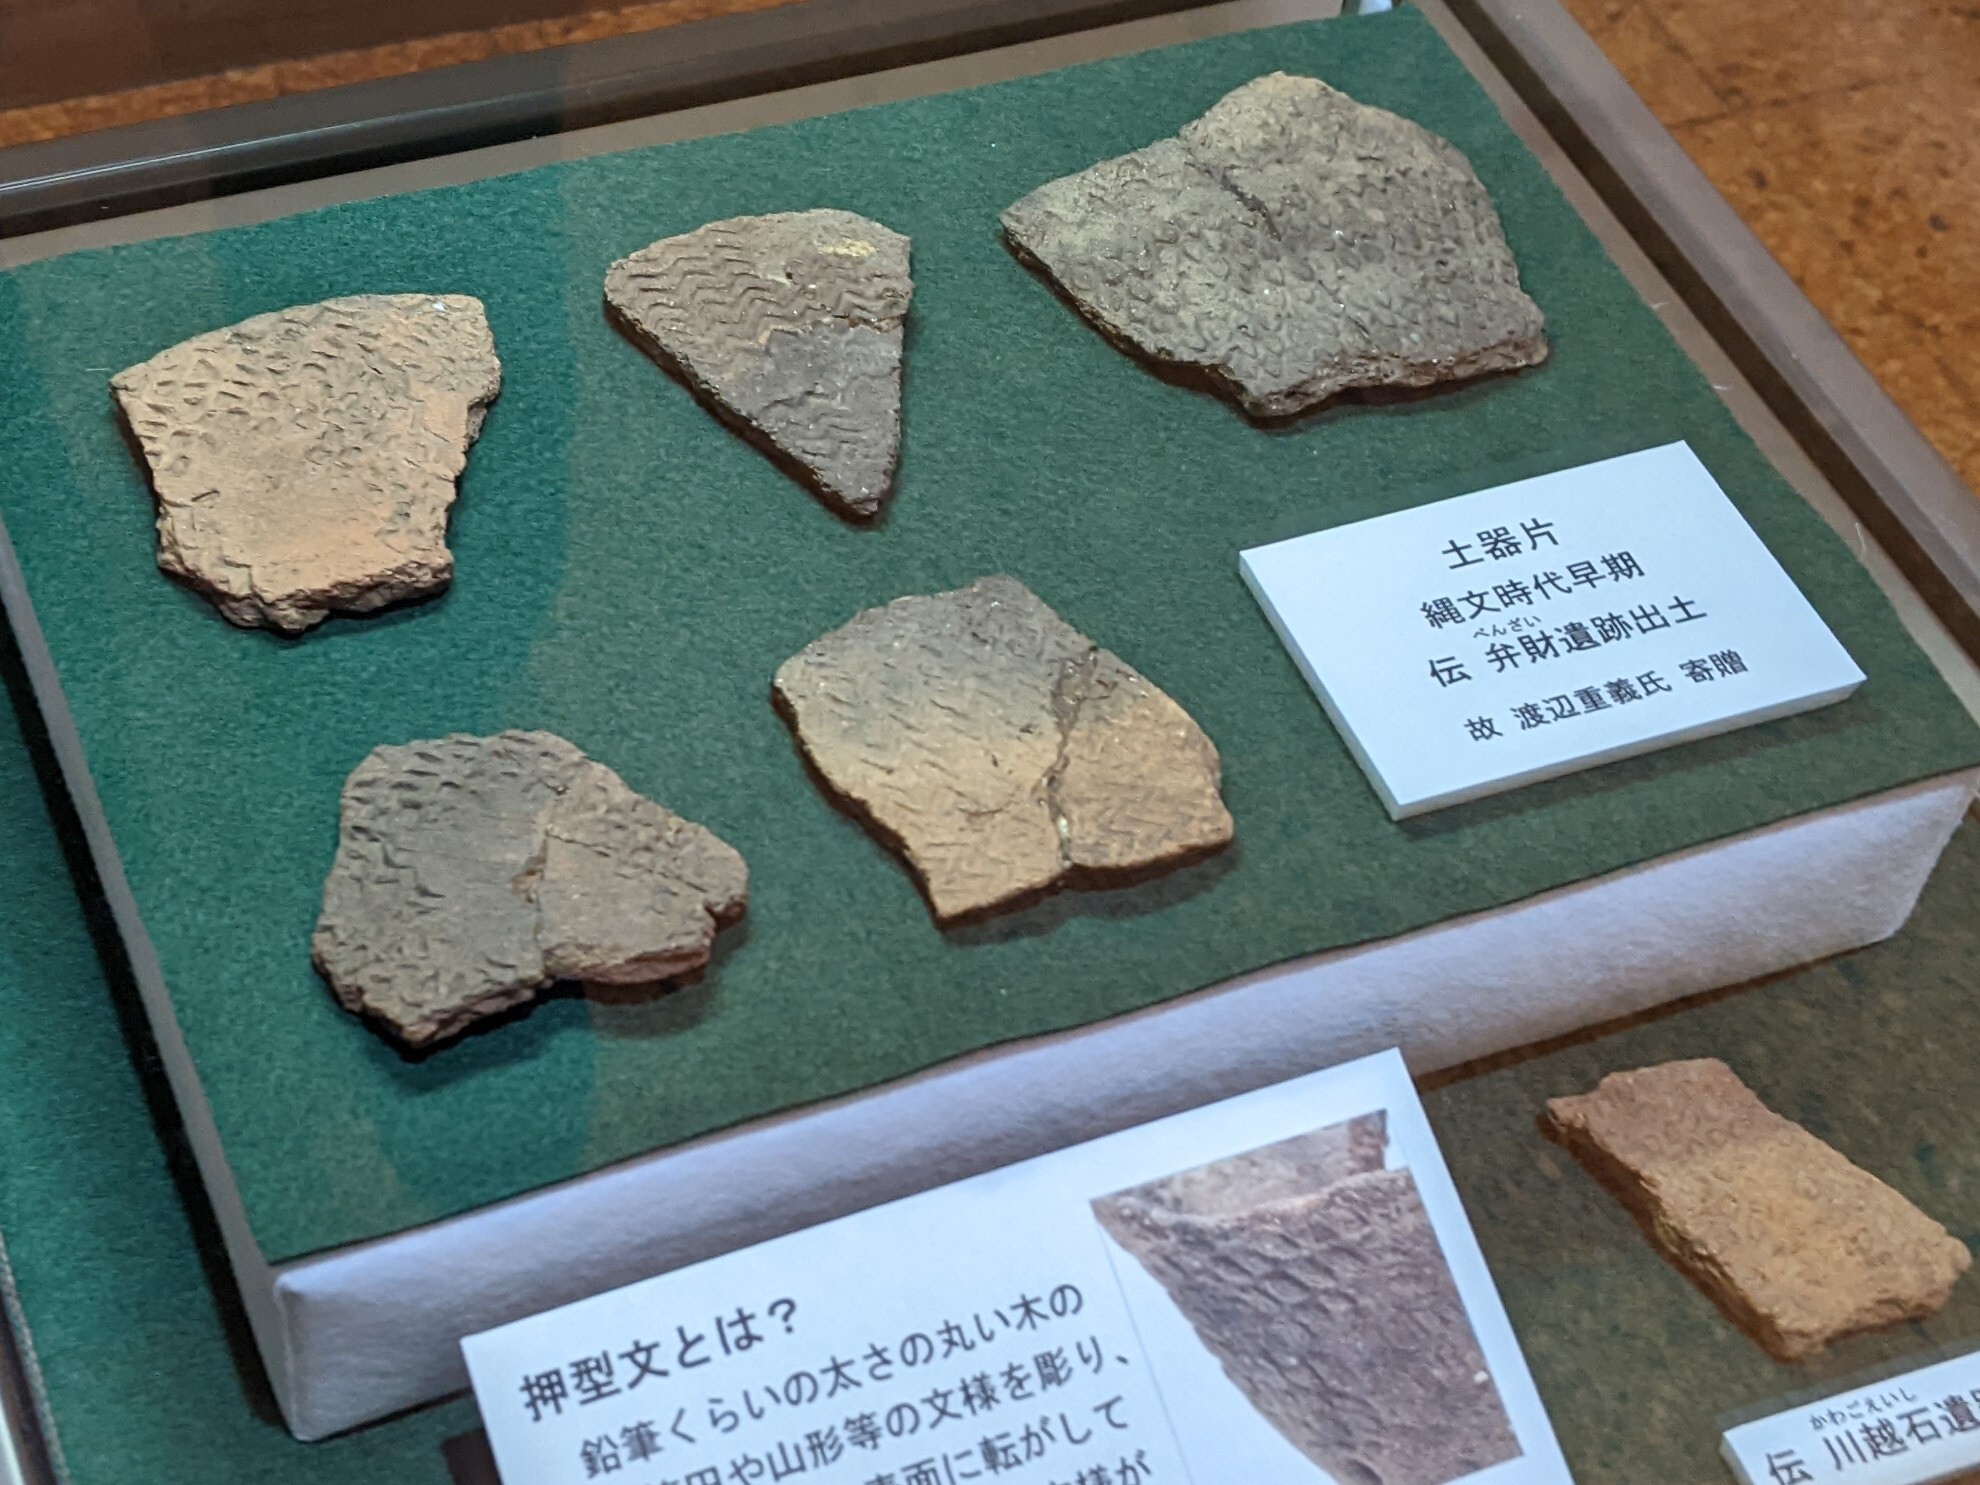 縄文時代早期の土器片